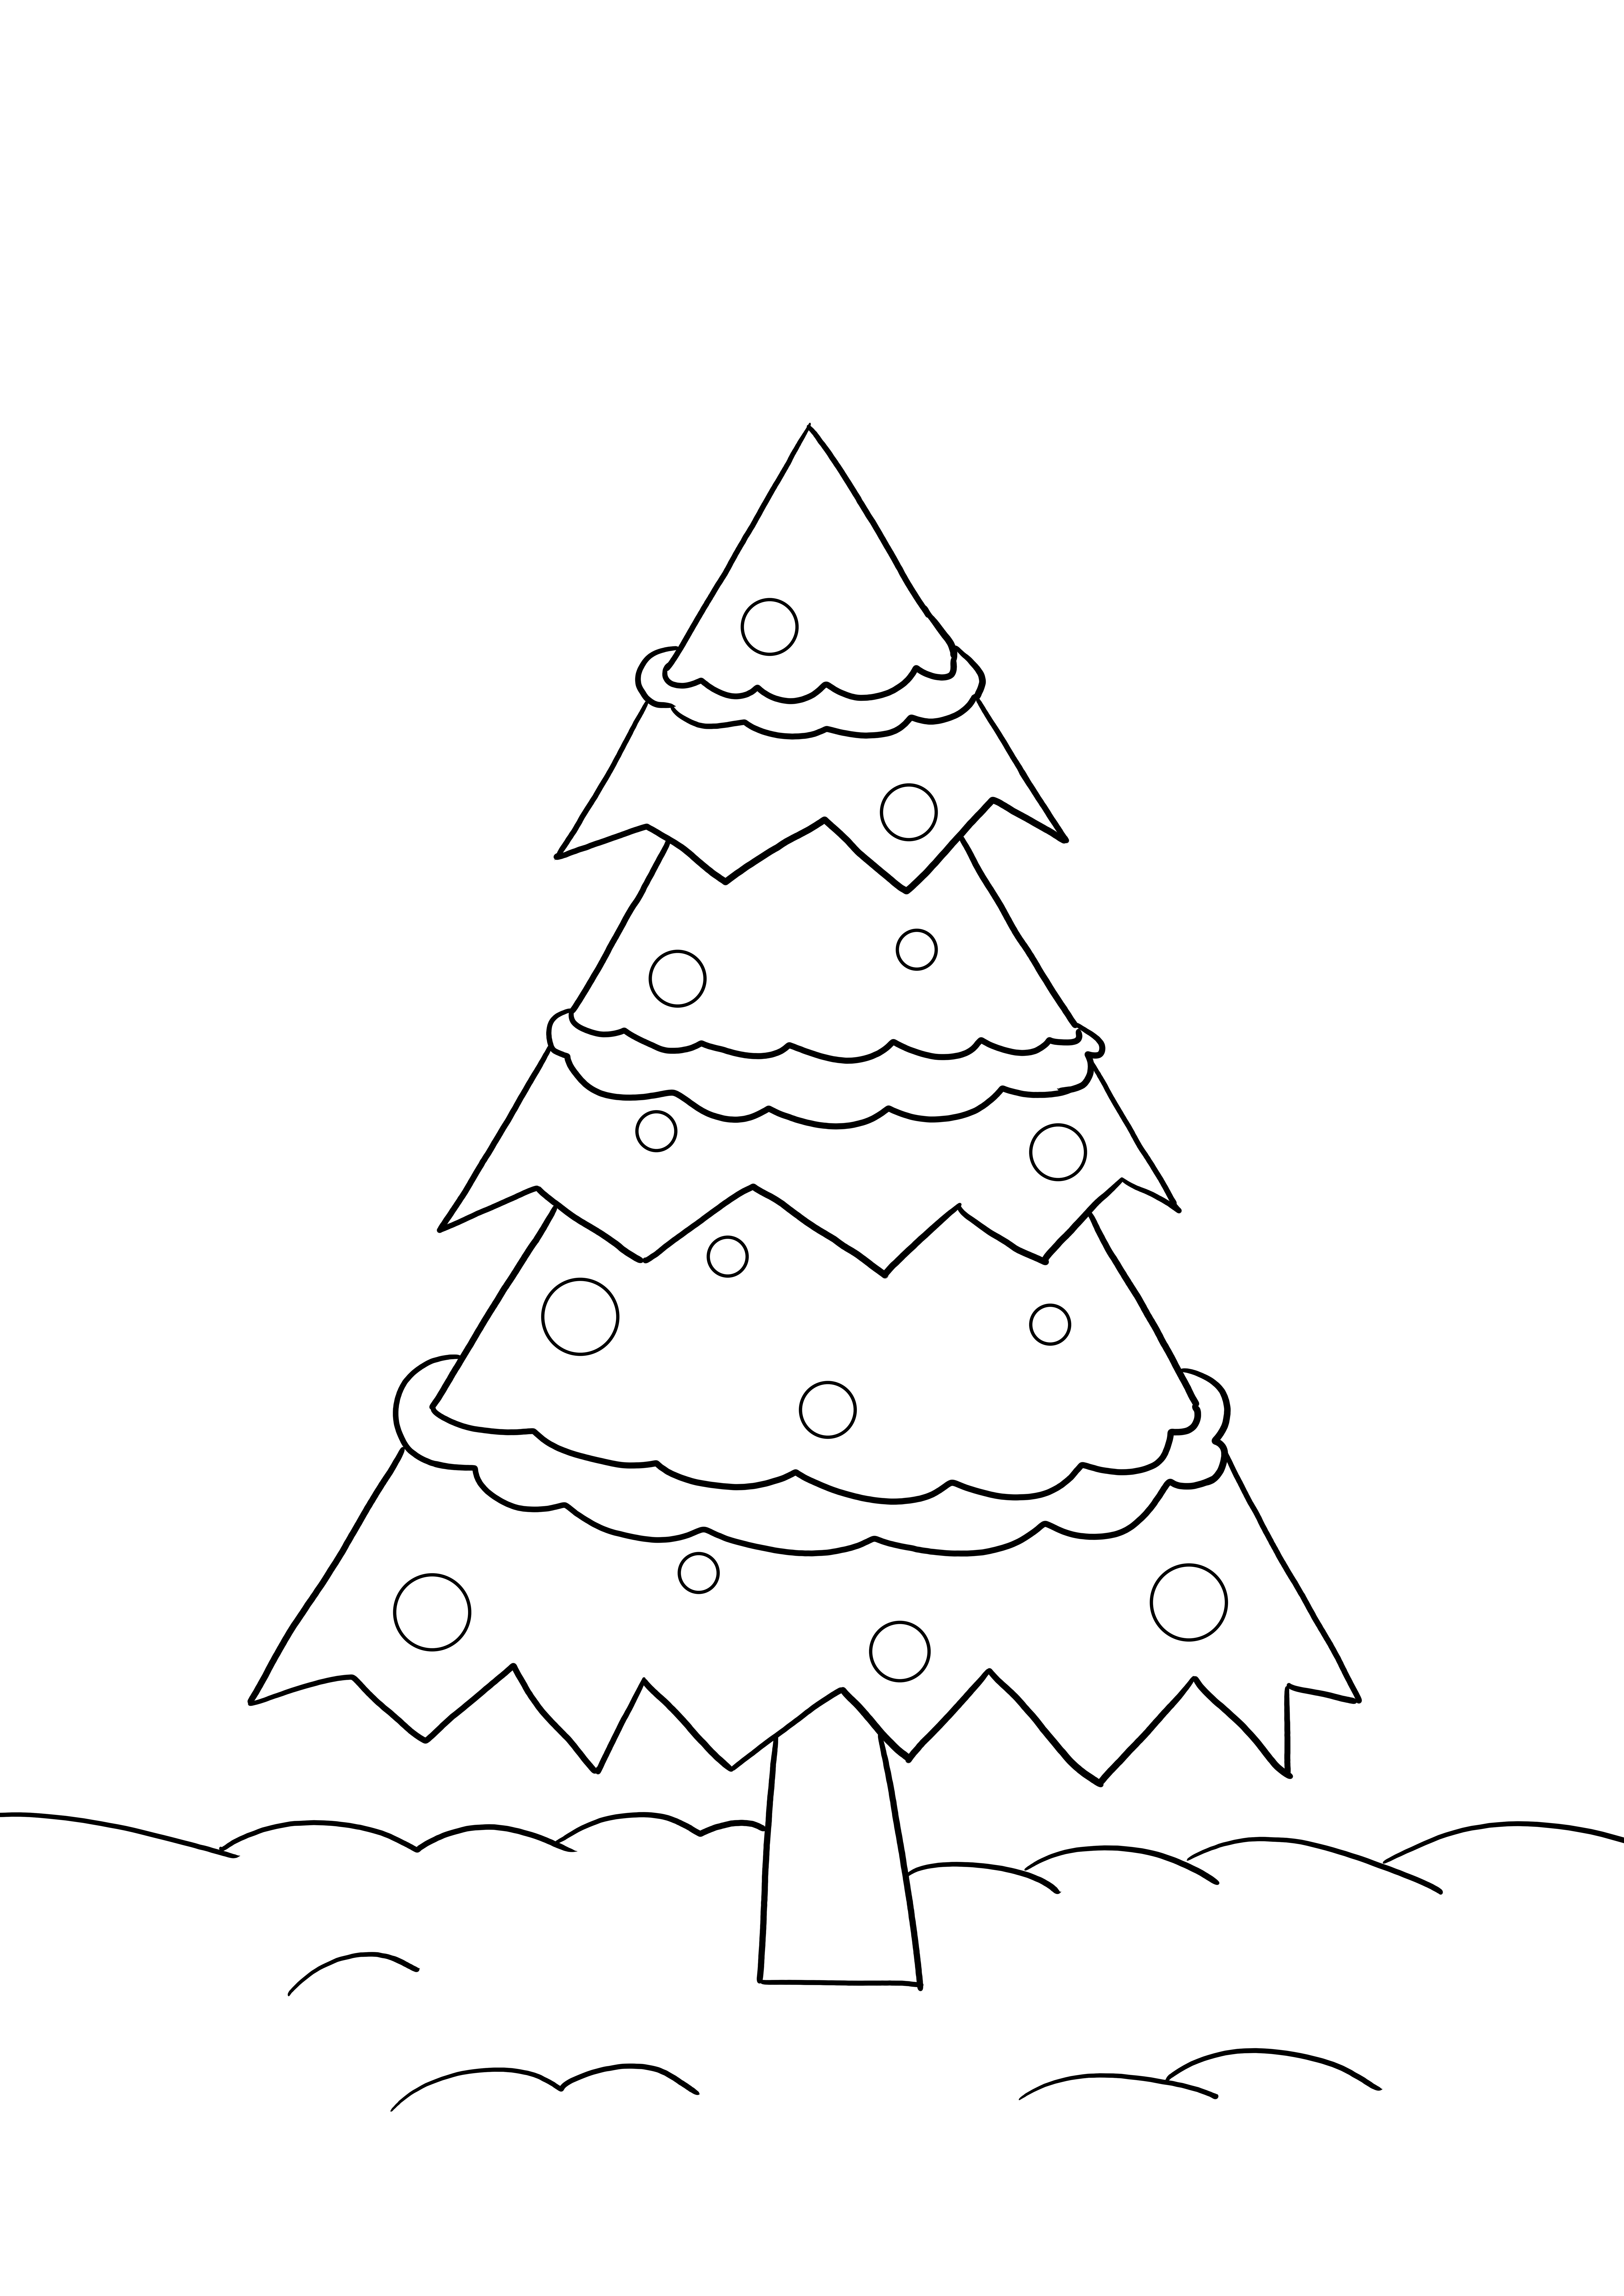 無料の印刷または保存用のシンプルなクリスマスツリーの着色シート